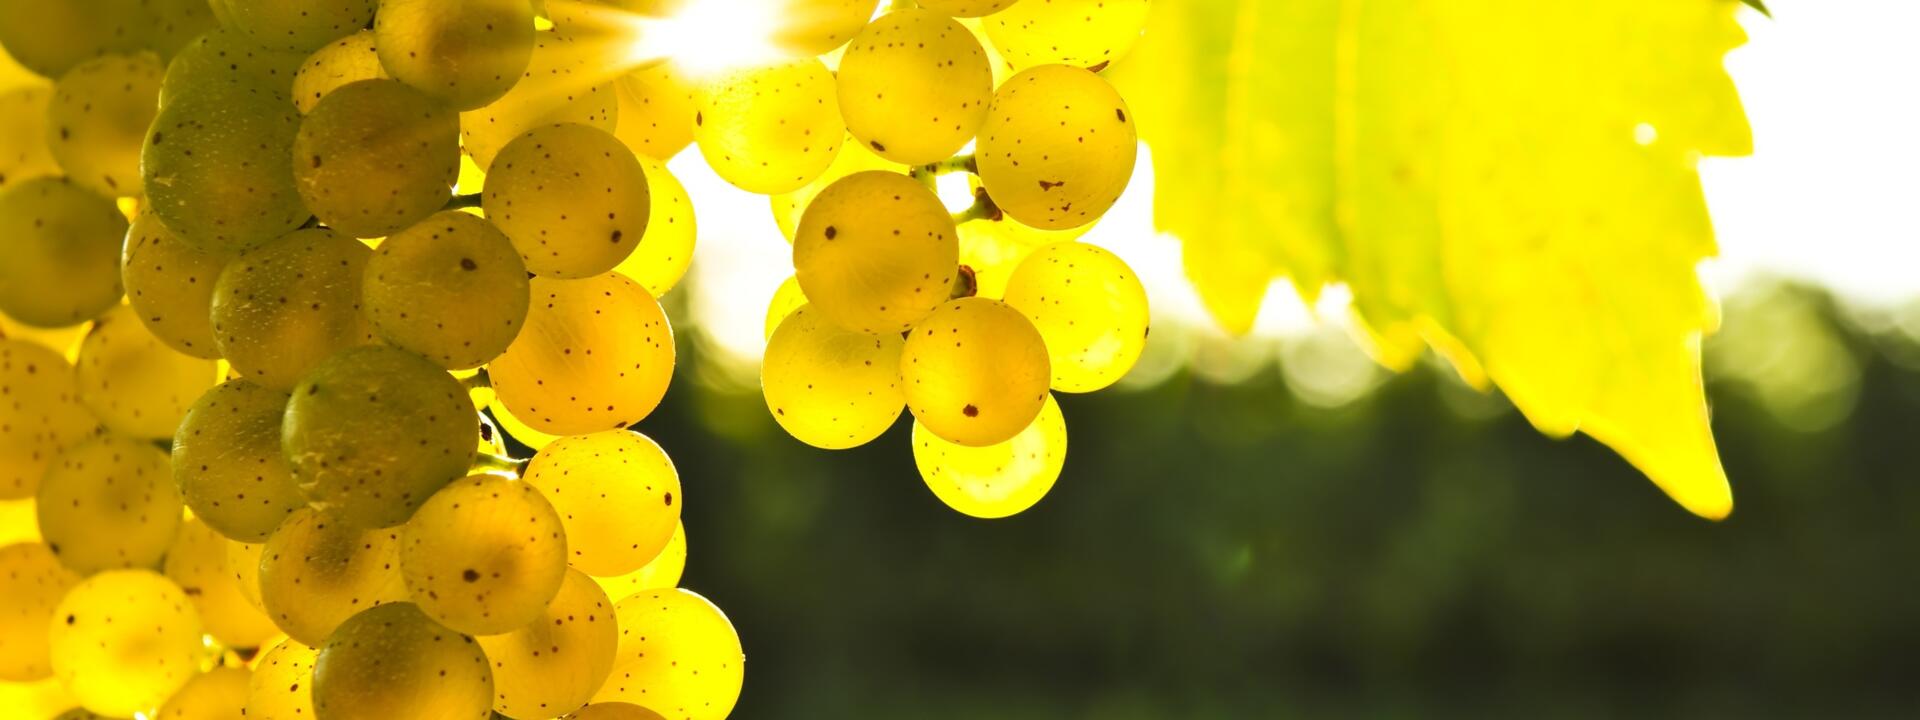 Sunlit Grapes in Blenheim.jpg